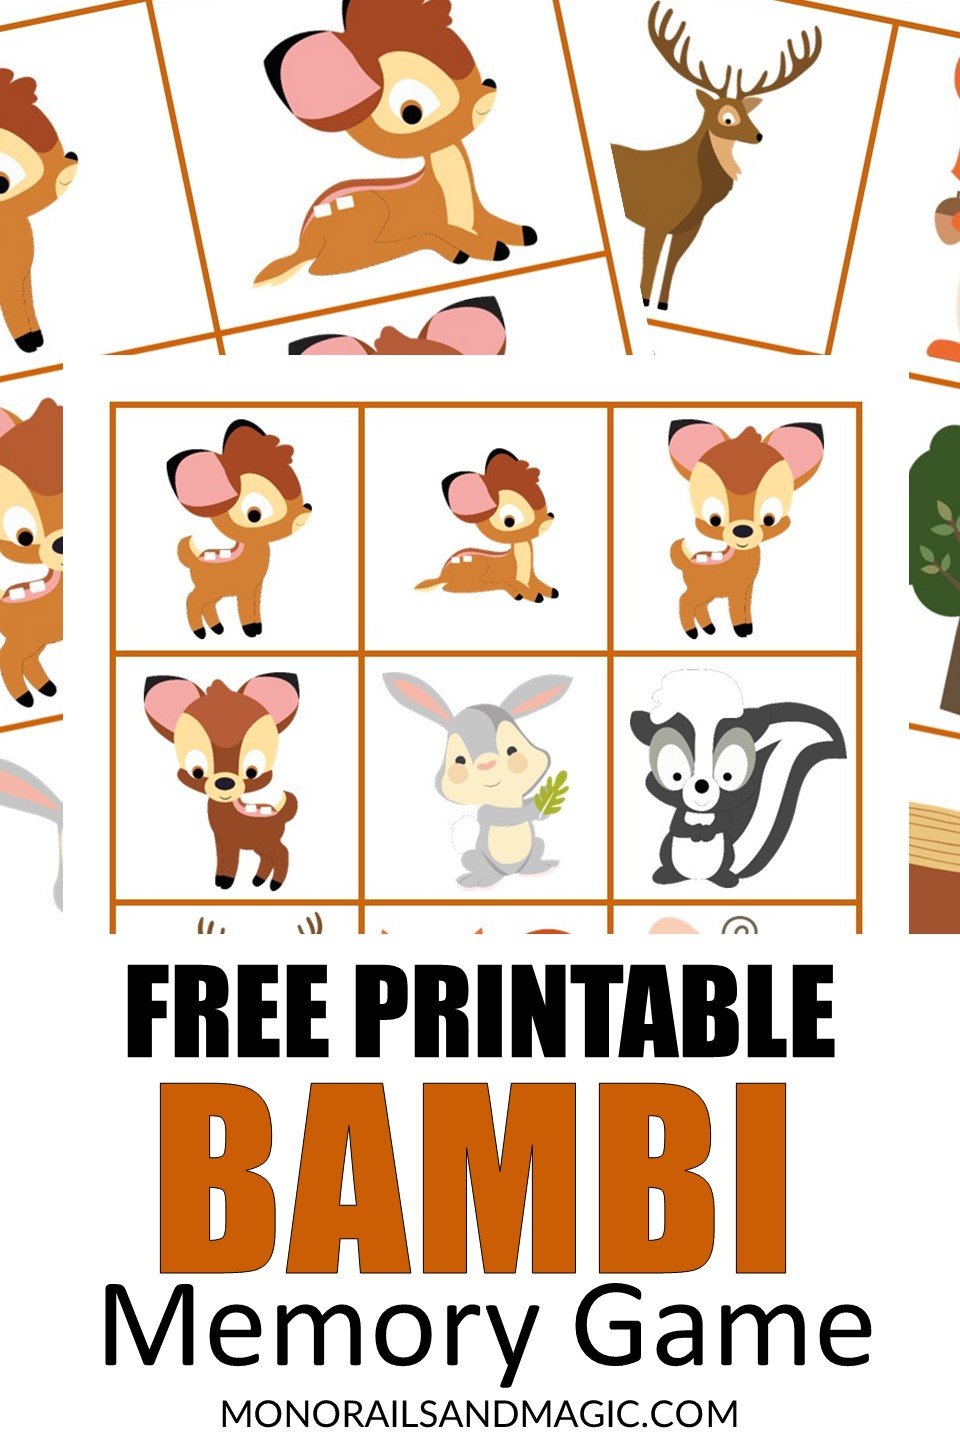 Free printable Bambi memory game for kids.